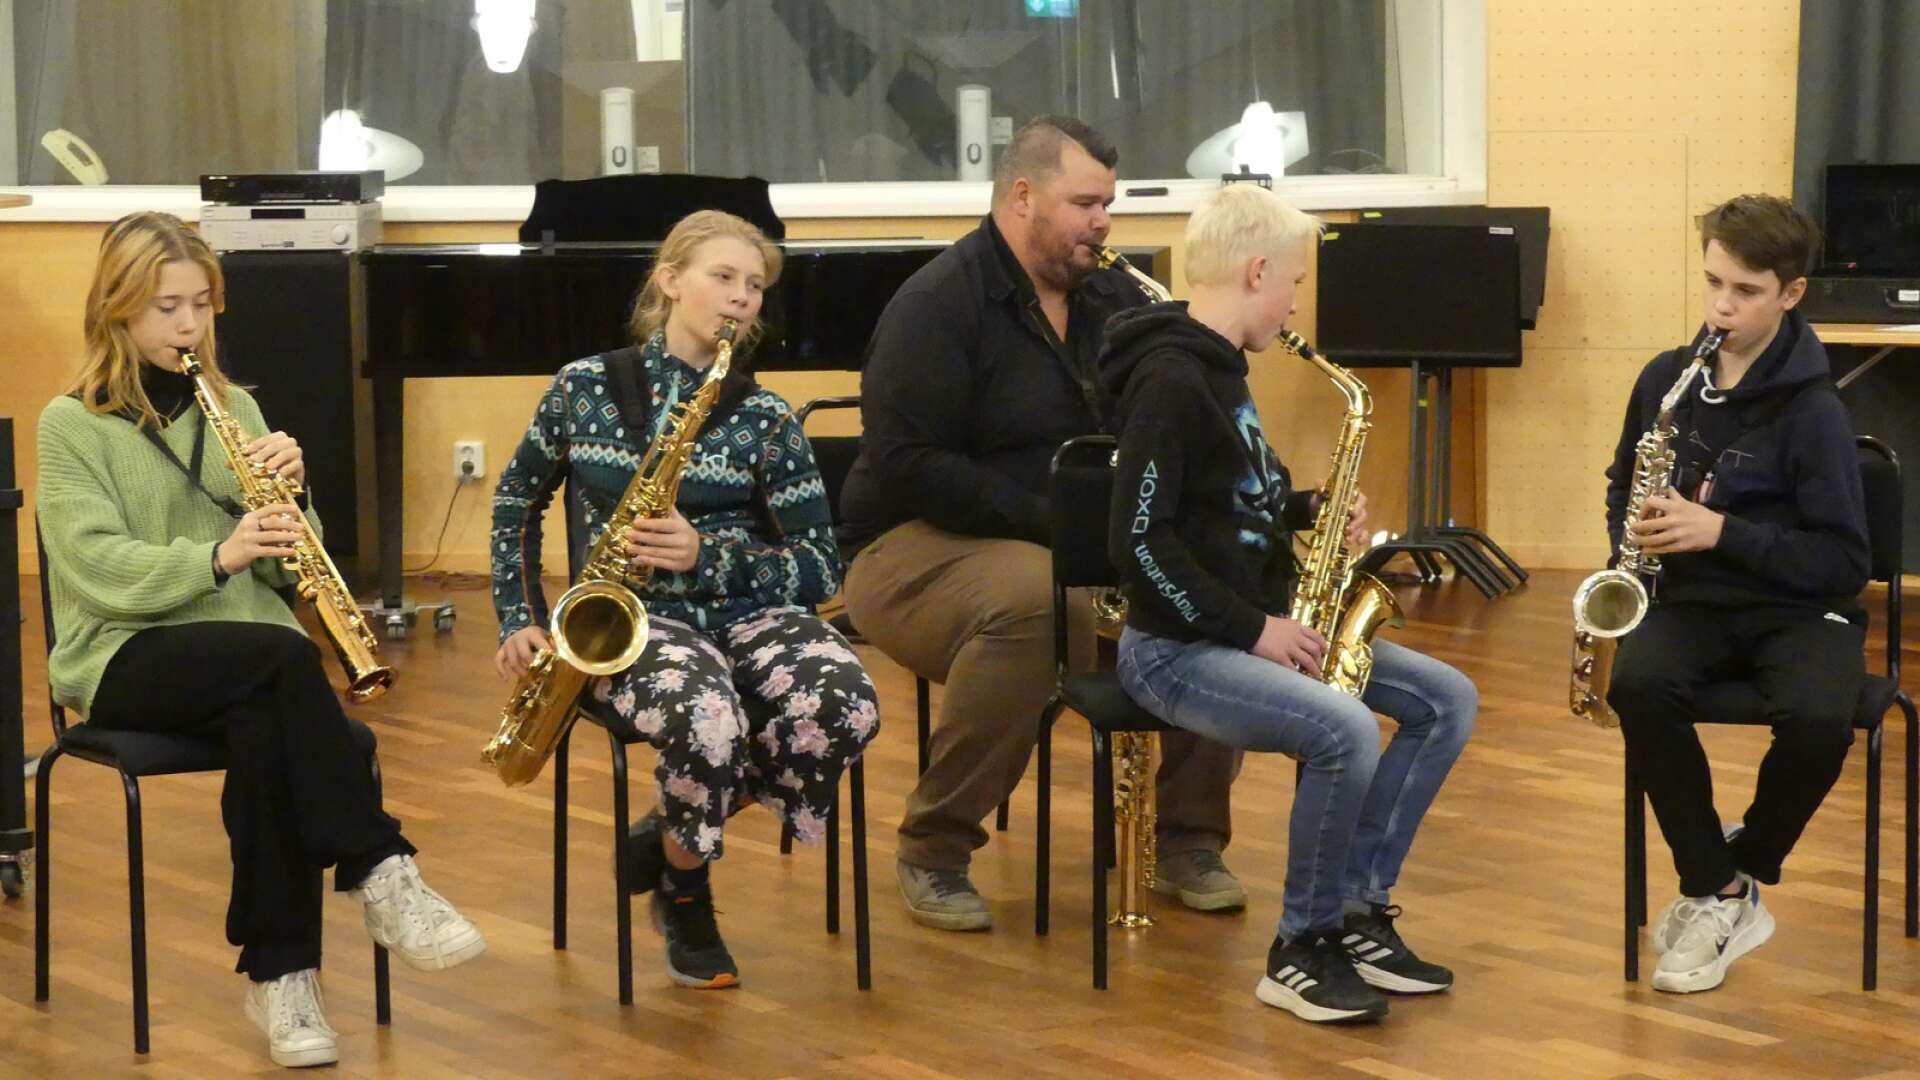 Att spela på gehör innebar en utmaning både för elever och lärare under lördagens folkmusikworkshop. Från vänster: Isolde Teetaert, Alice Nilsson, Isak Danielsson och Noa Wiman. Bakom: Fredrik Myrén.